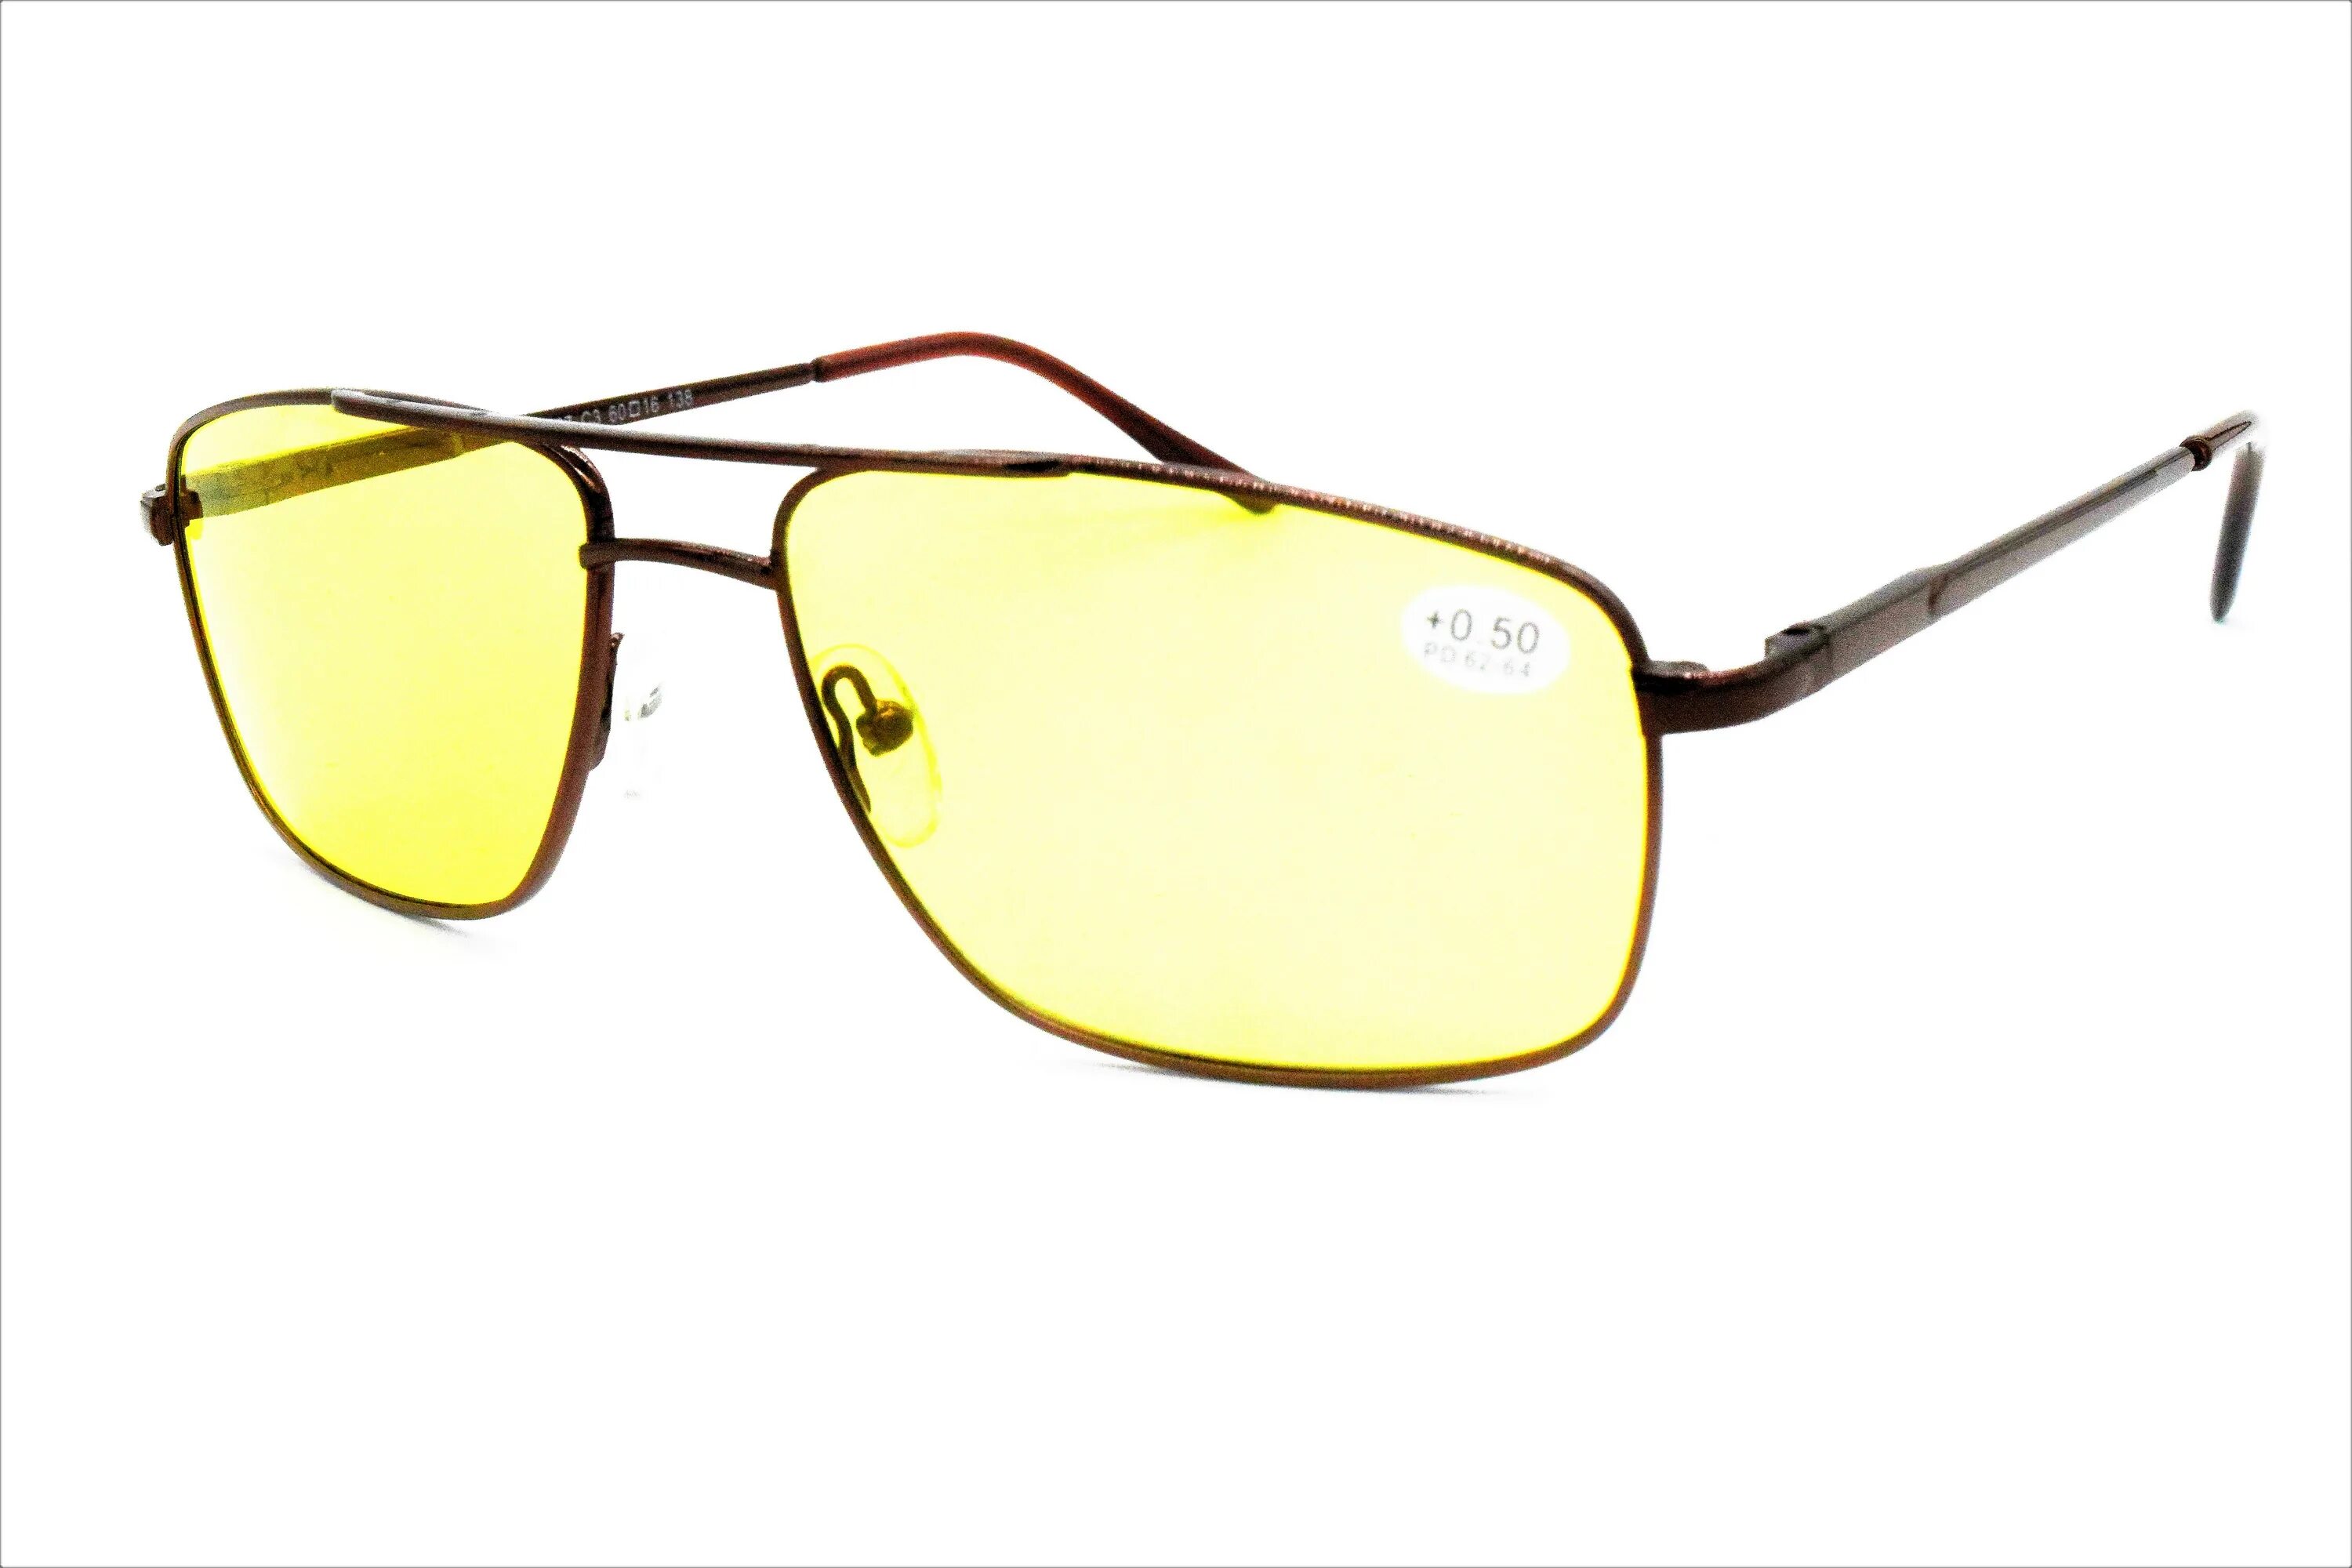 Очки антифары купить. Matsuda mt090-s7 – фотохромные очки. Очки Матсуда антифары mt027. Очки антифары с диоптриями. Очки dioptrii -0.50.